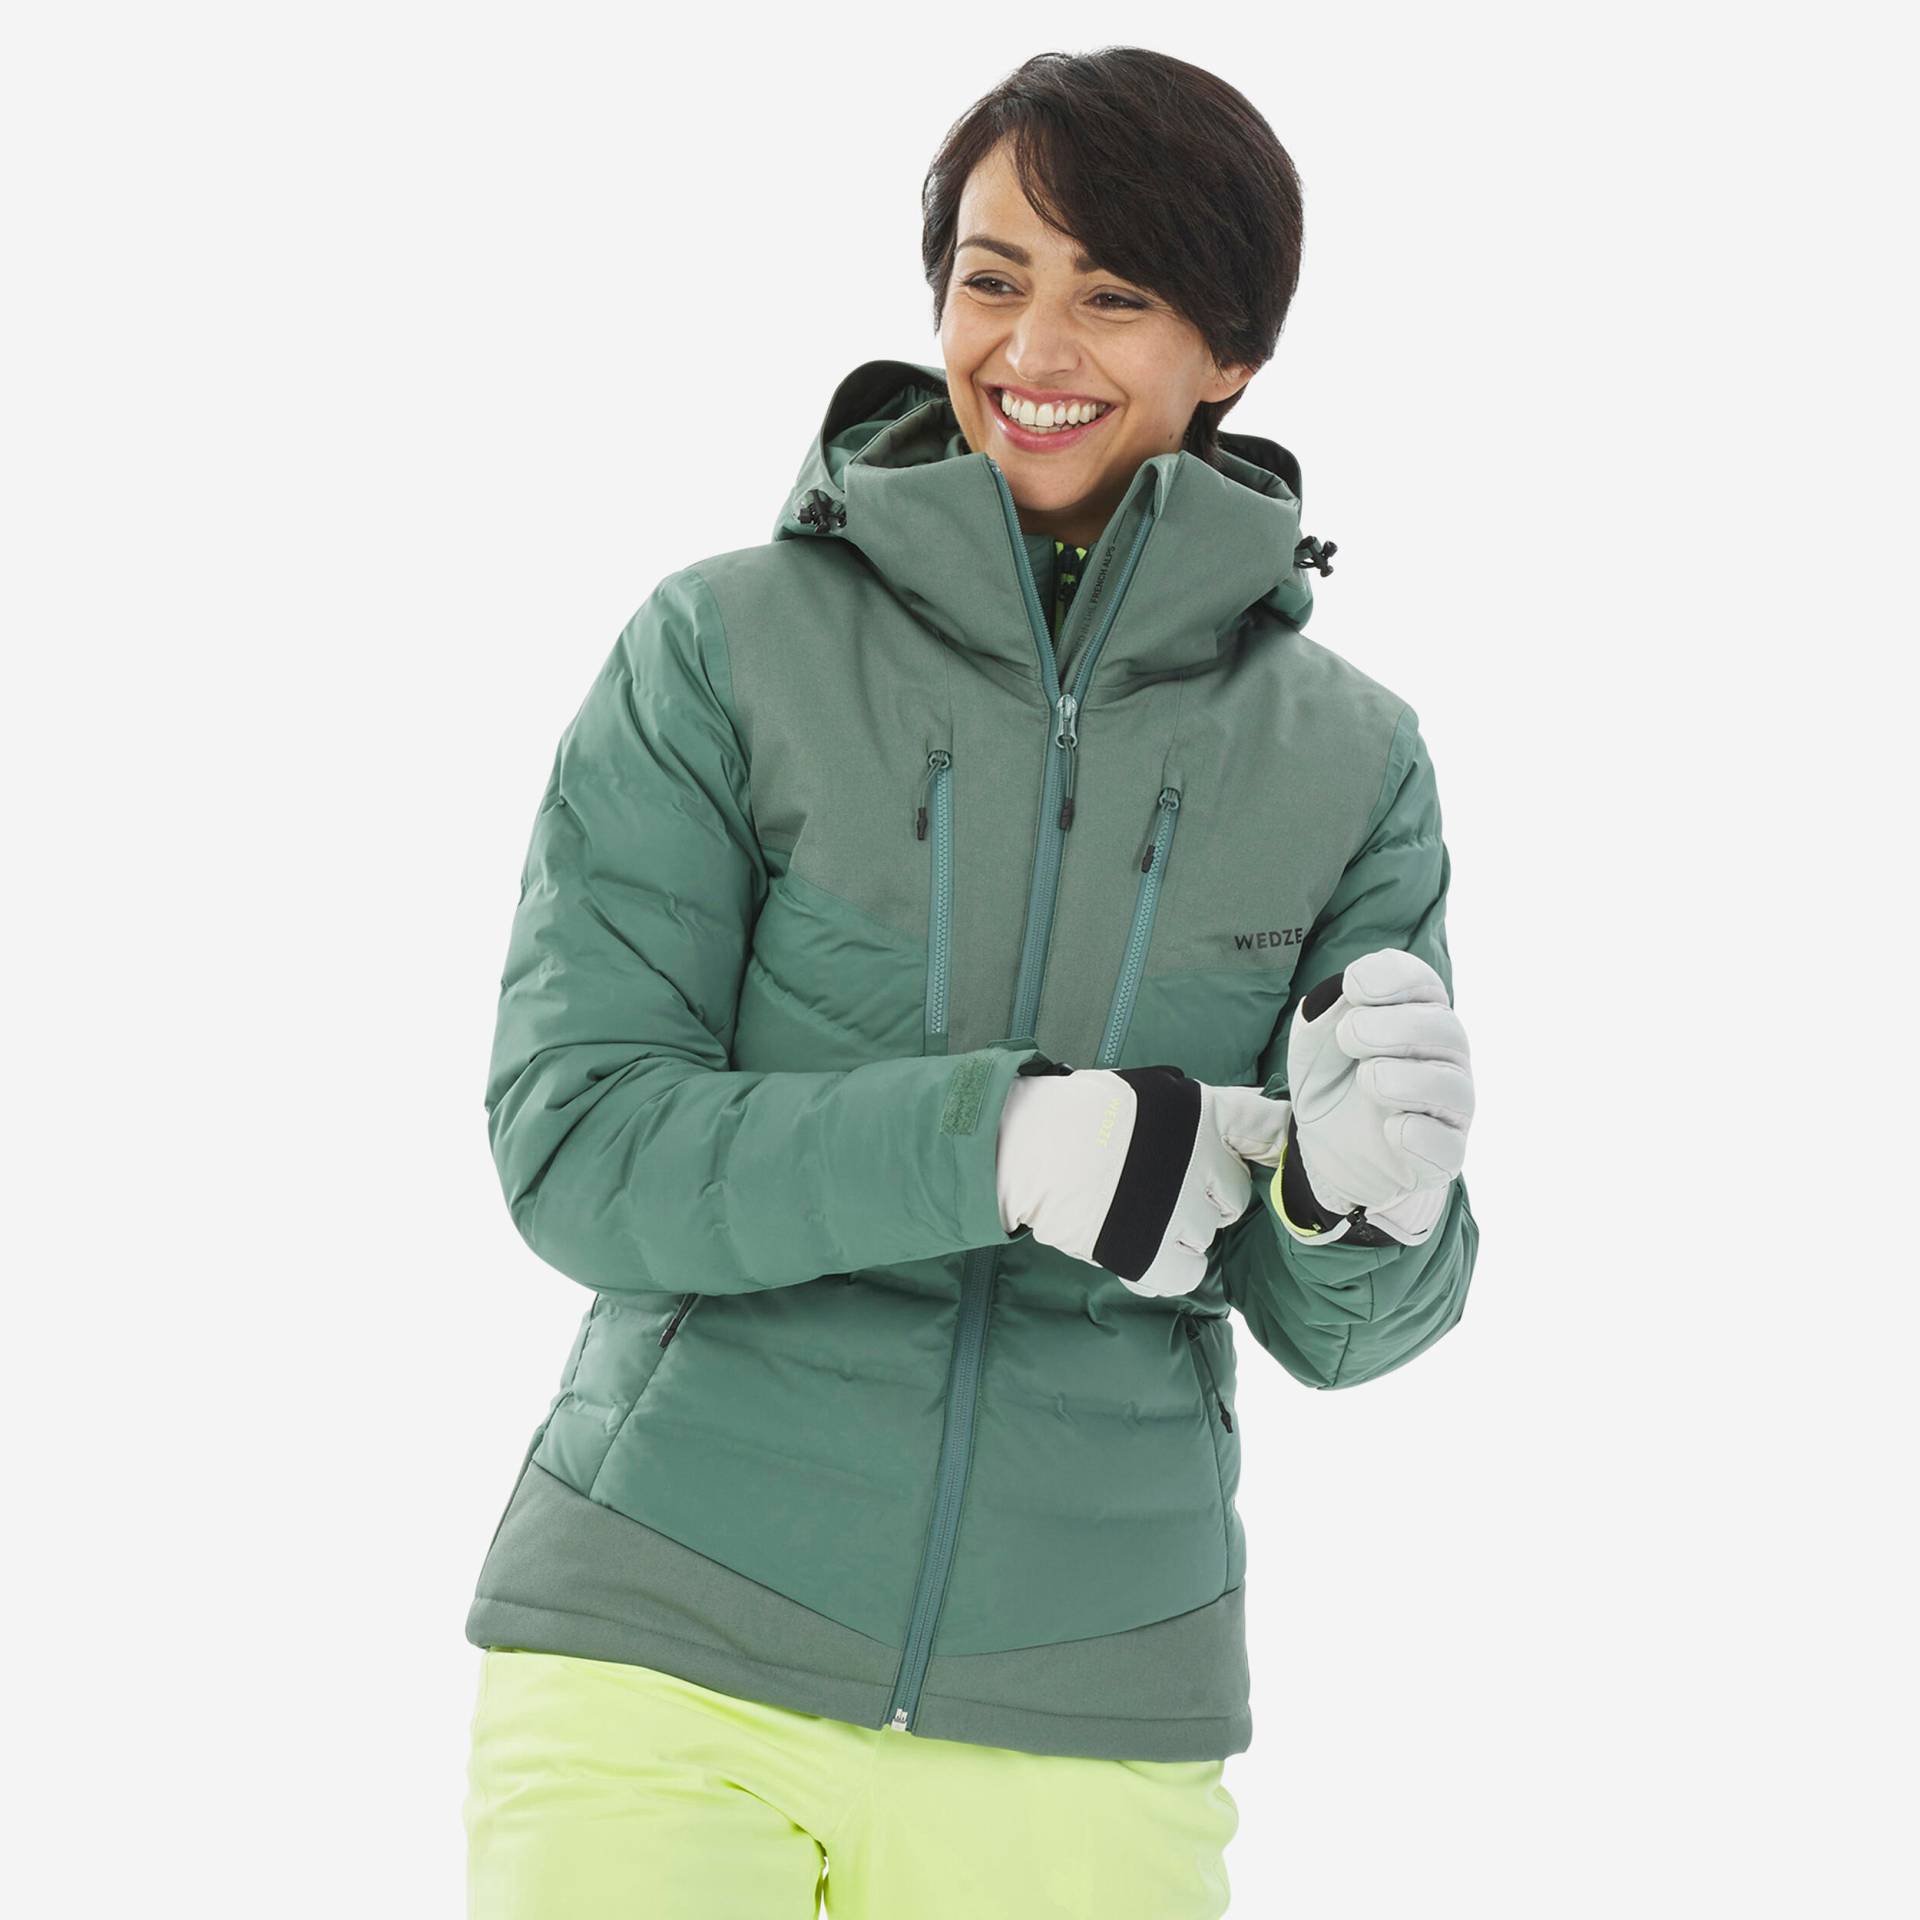 Skijacke Daunenjacke Damen warm - Piste 900 grün von WEDZE